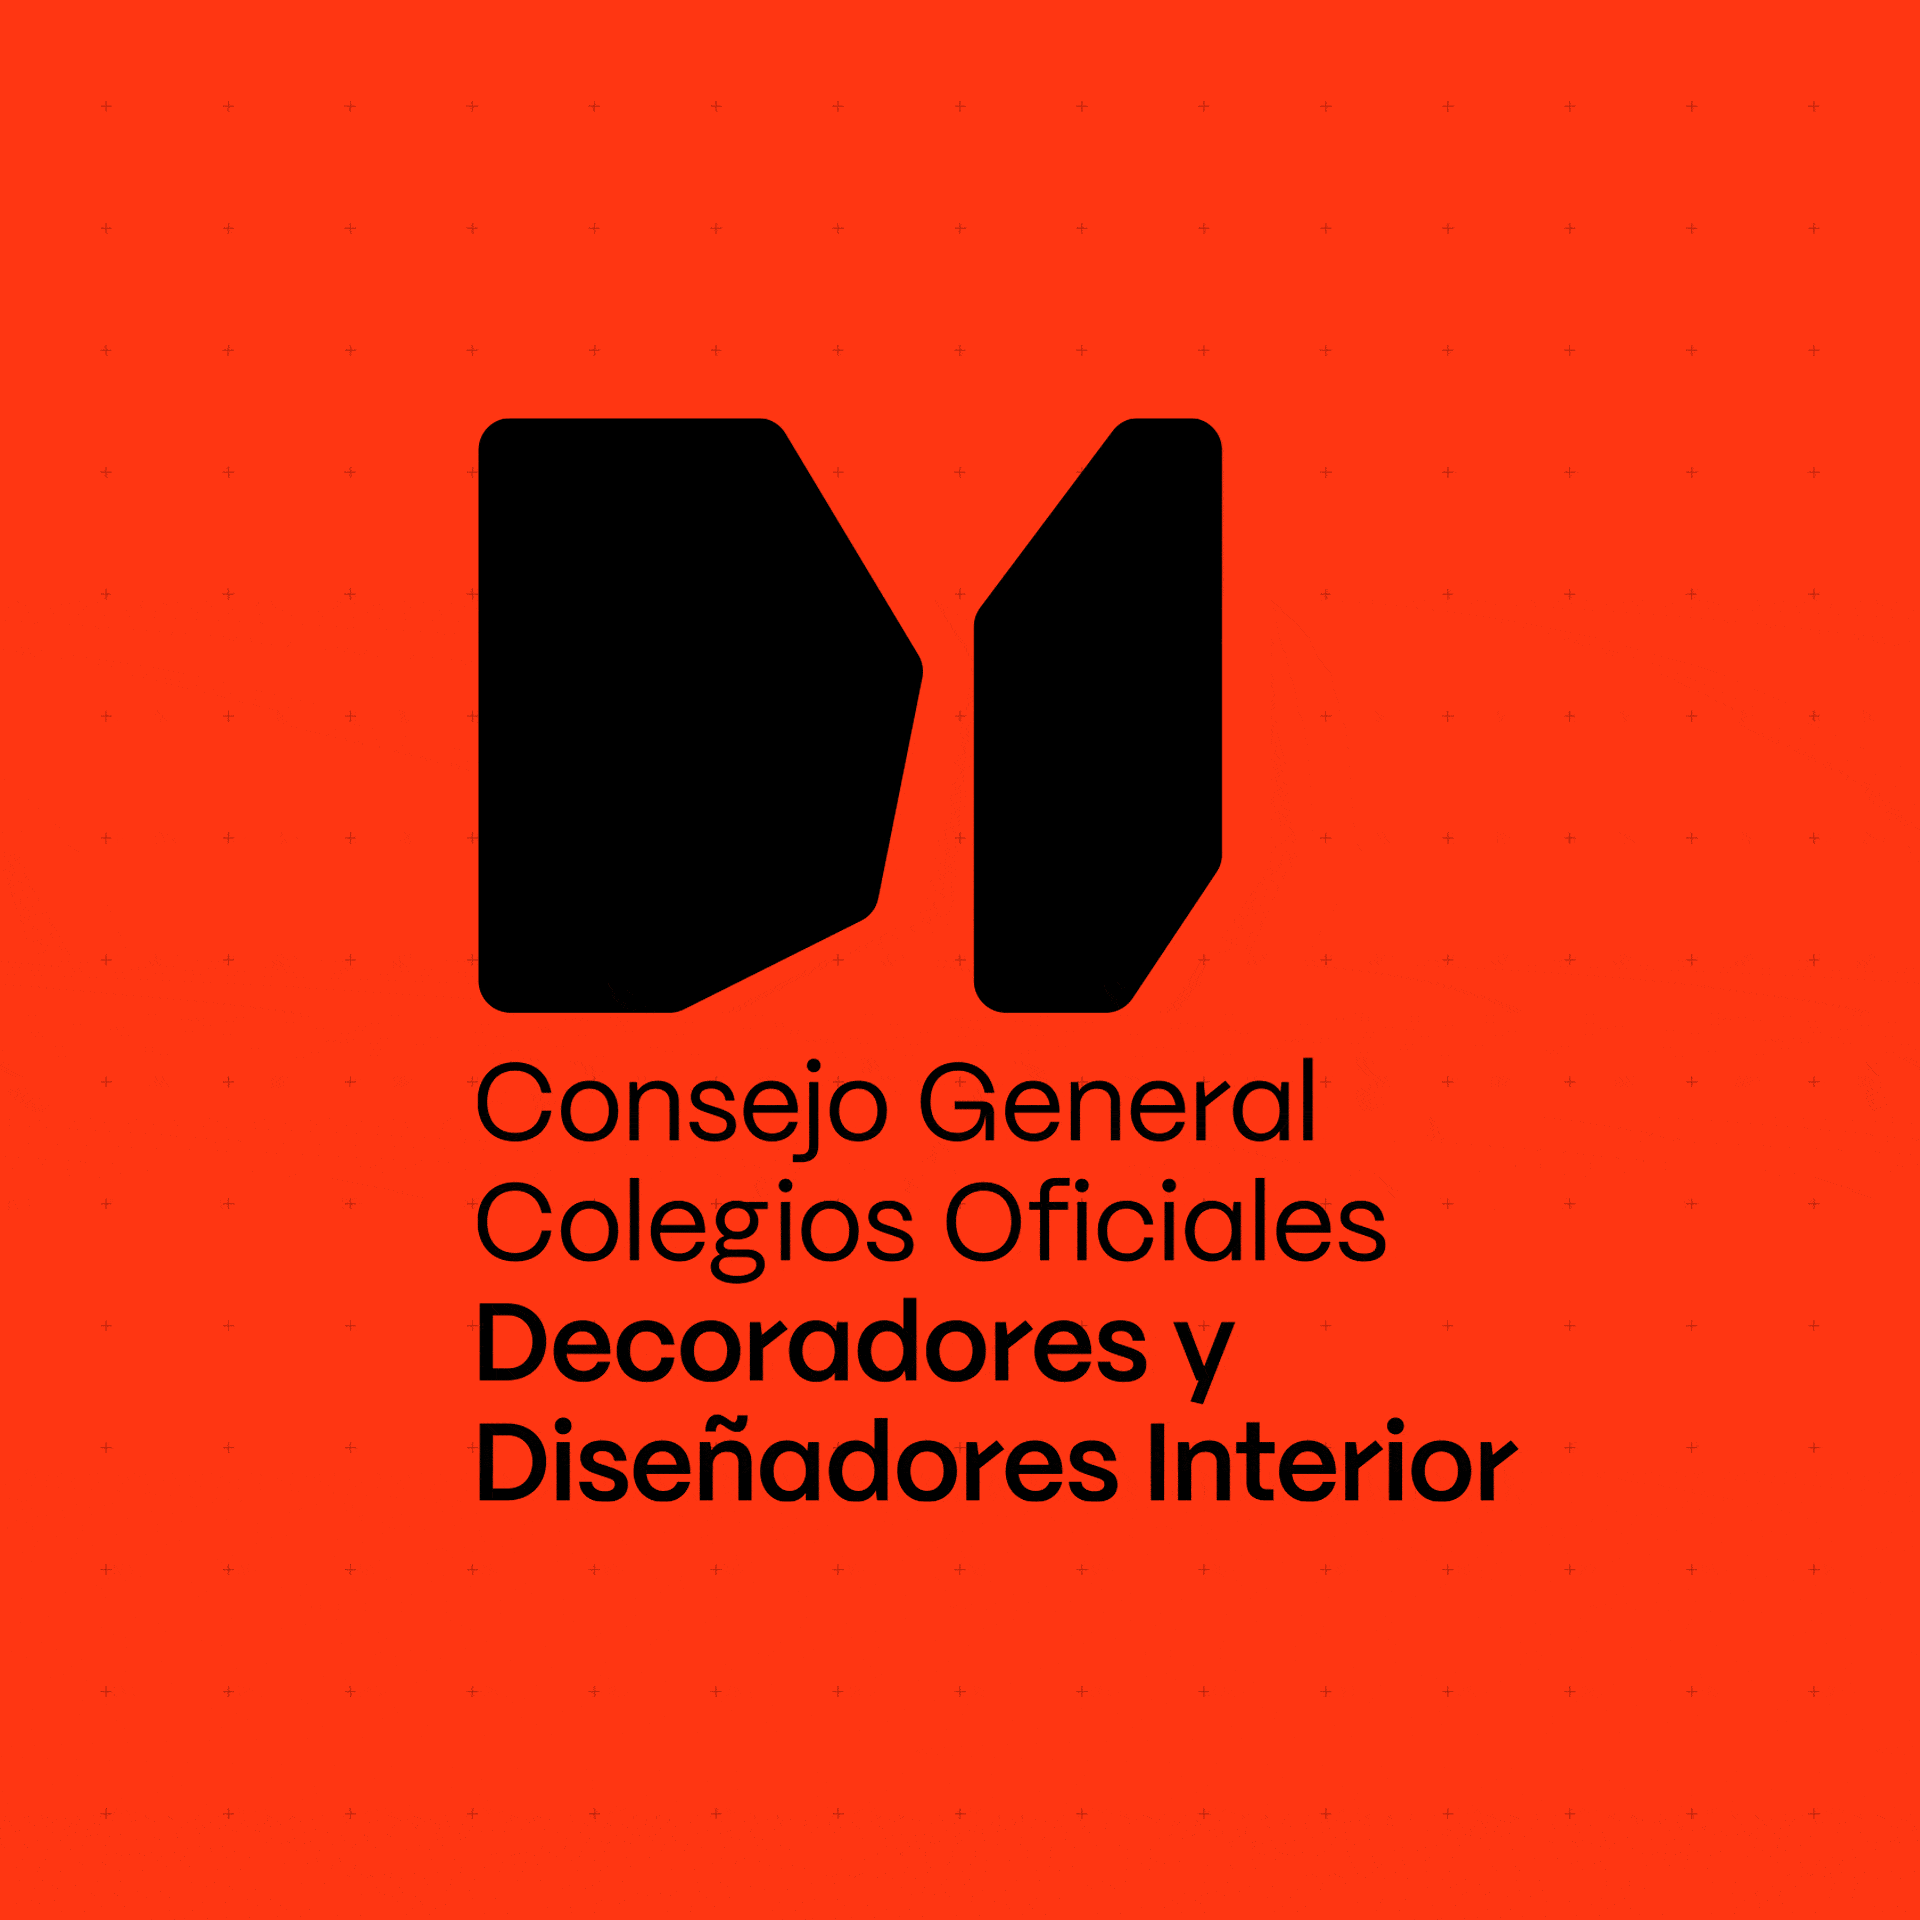 Imagen gráfica Consejo General de Colegios Oficiales de Decoradores y Diseñadores de Interior